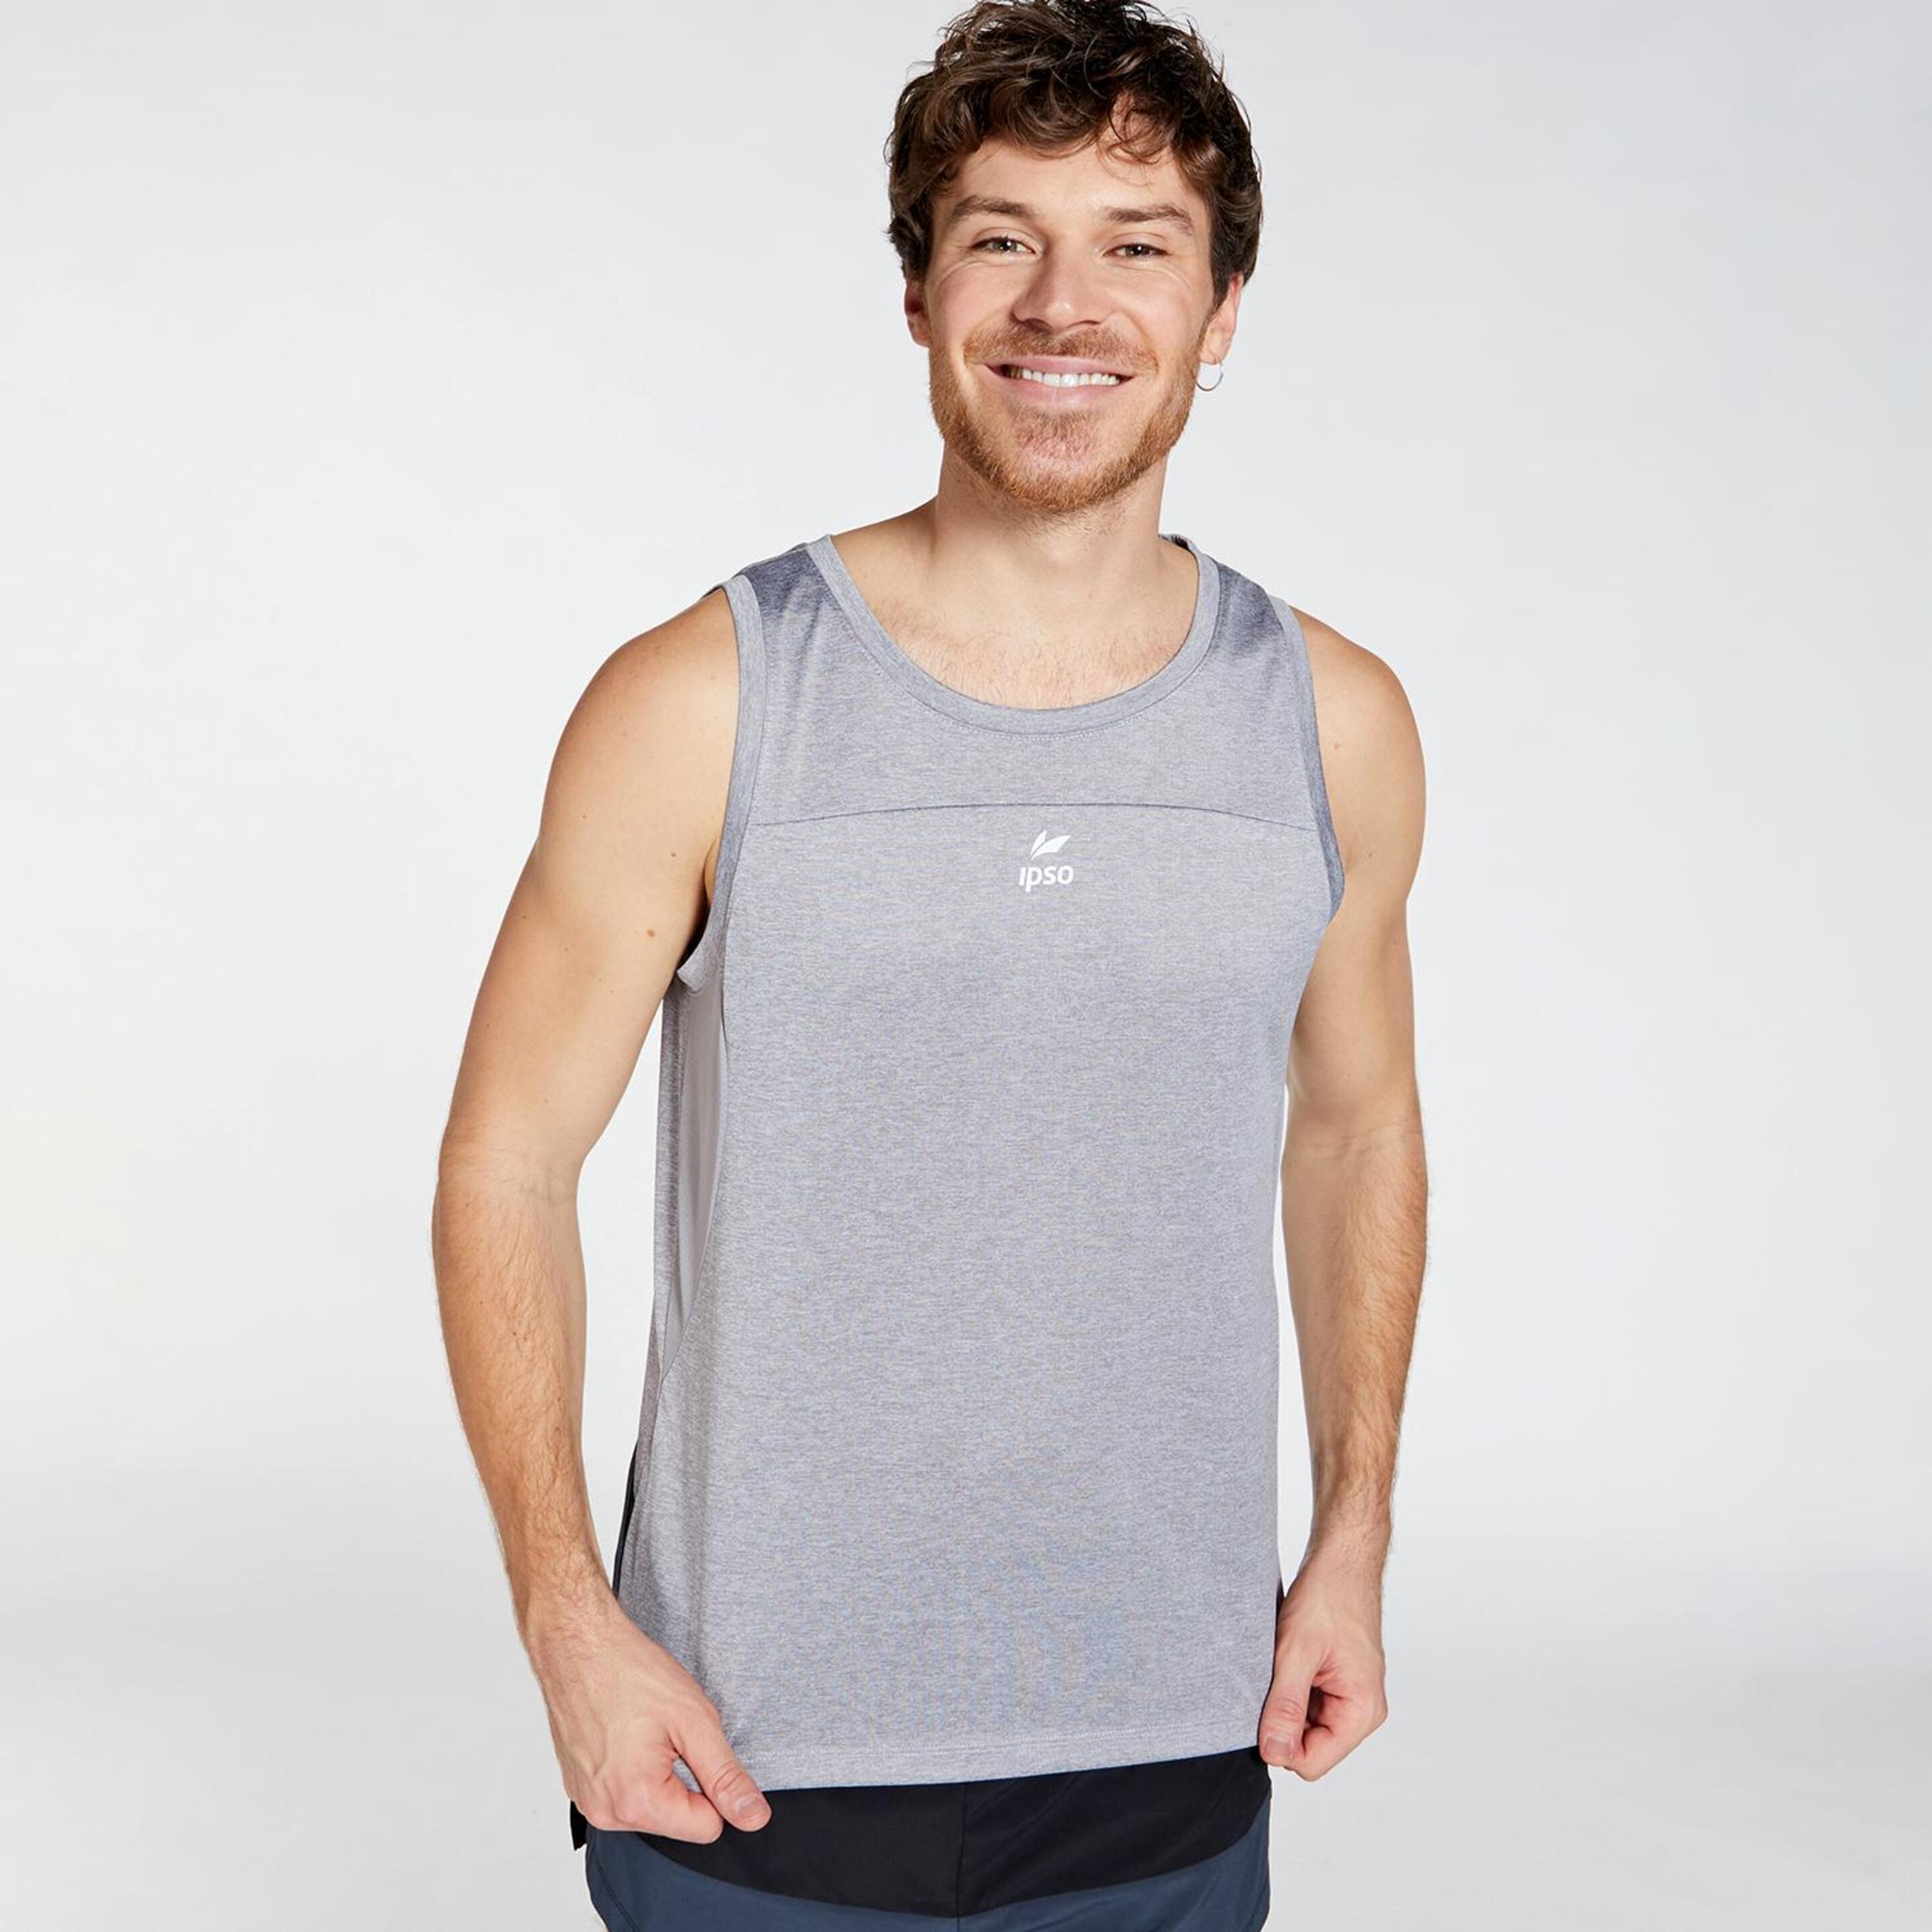 Ipso Combi 1 - gris - Camiseta Running Hombre